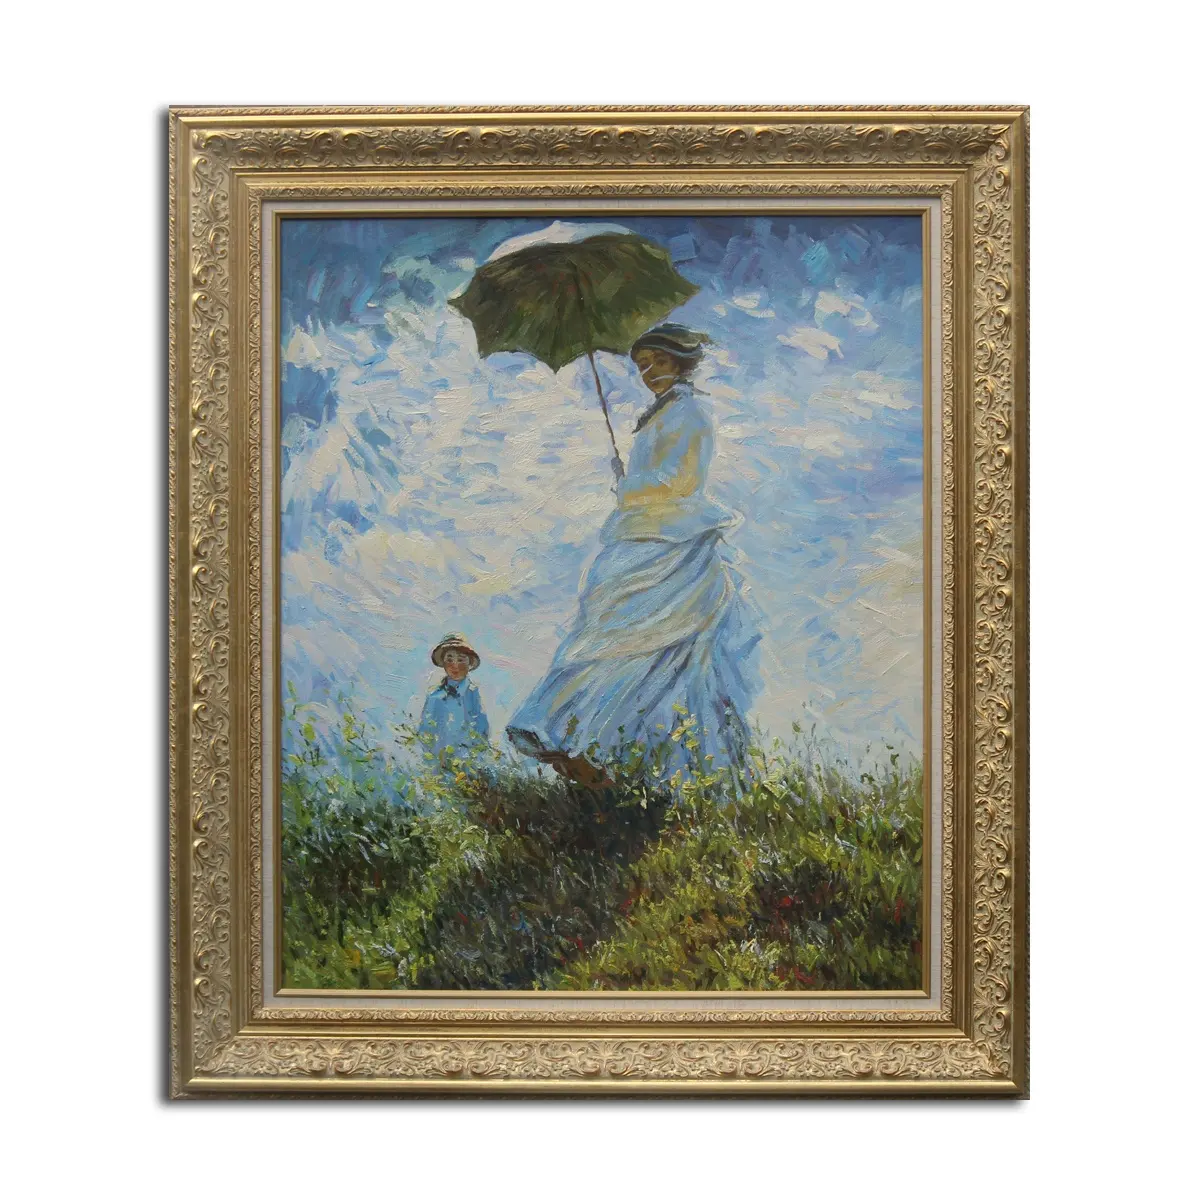 Puento de reproducción de la pintura de la mujer con una sombrilla por Claude Oscar Monet